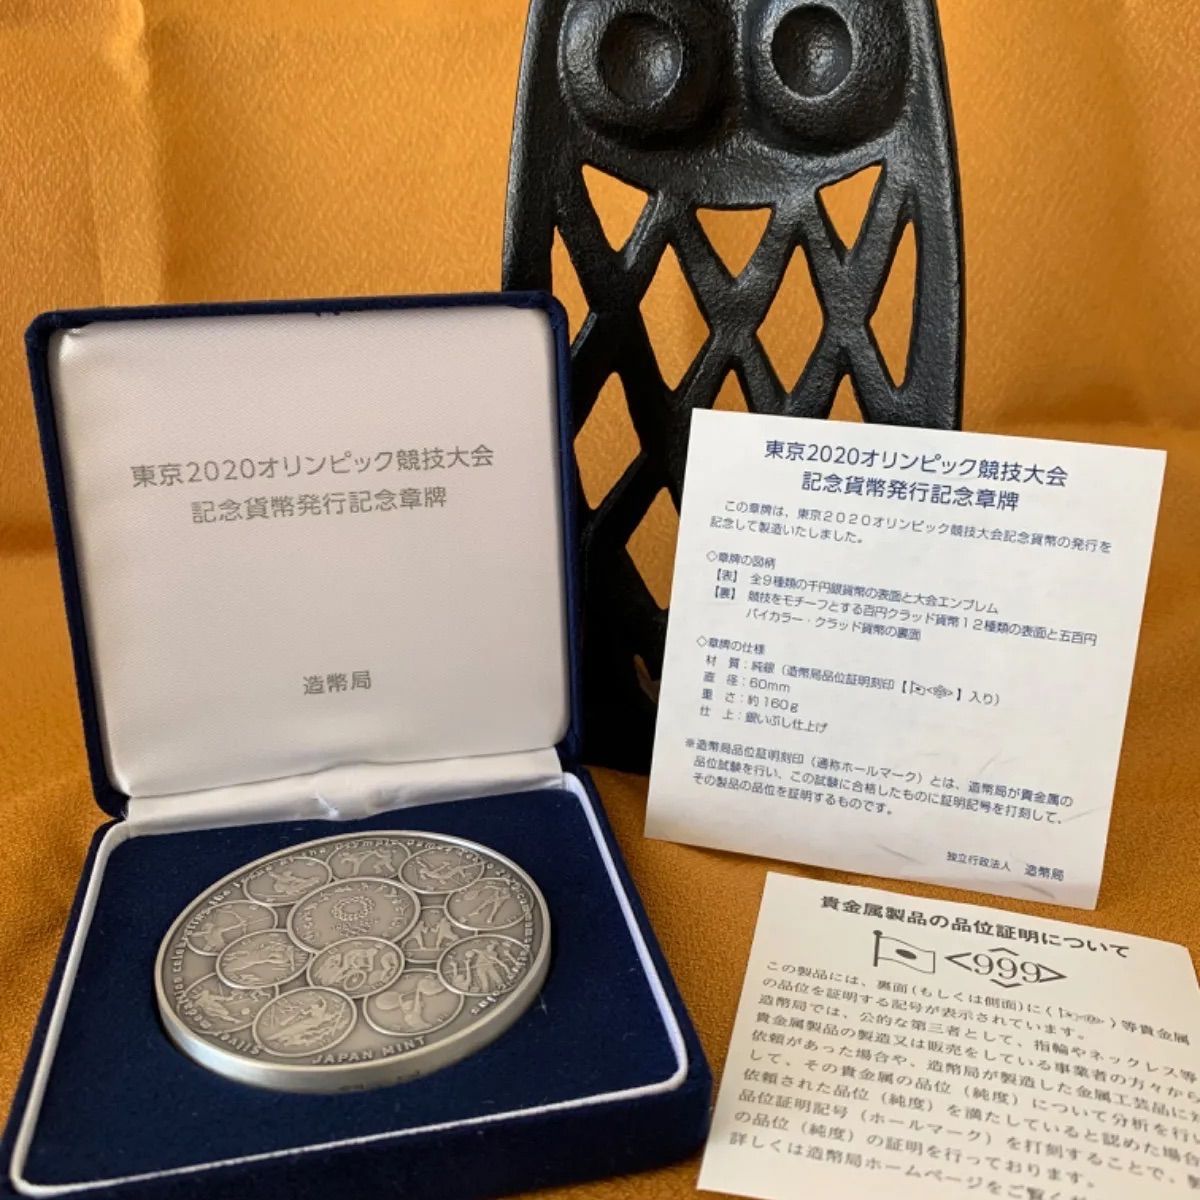 2020 東京 オリンピック パラリンピック 記念貨幣発行 記念章牌 2種揃いパラリンピック